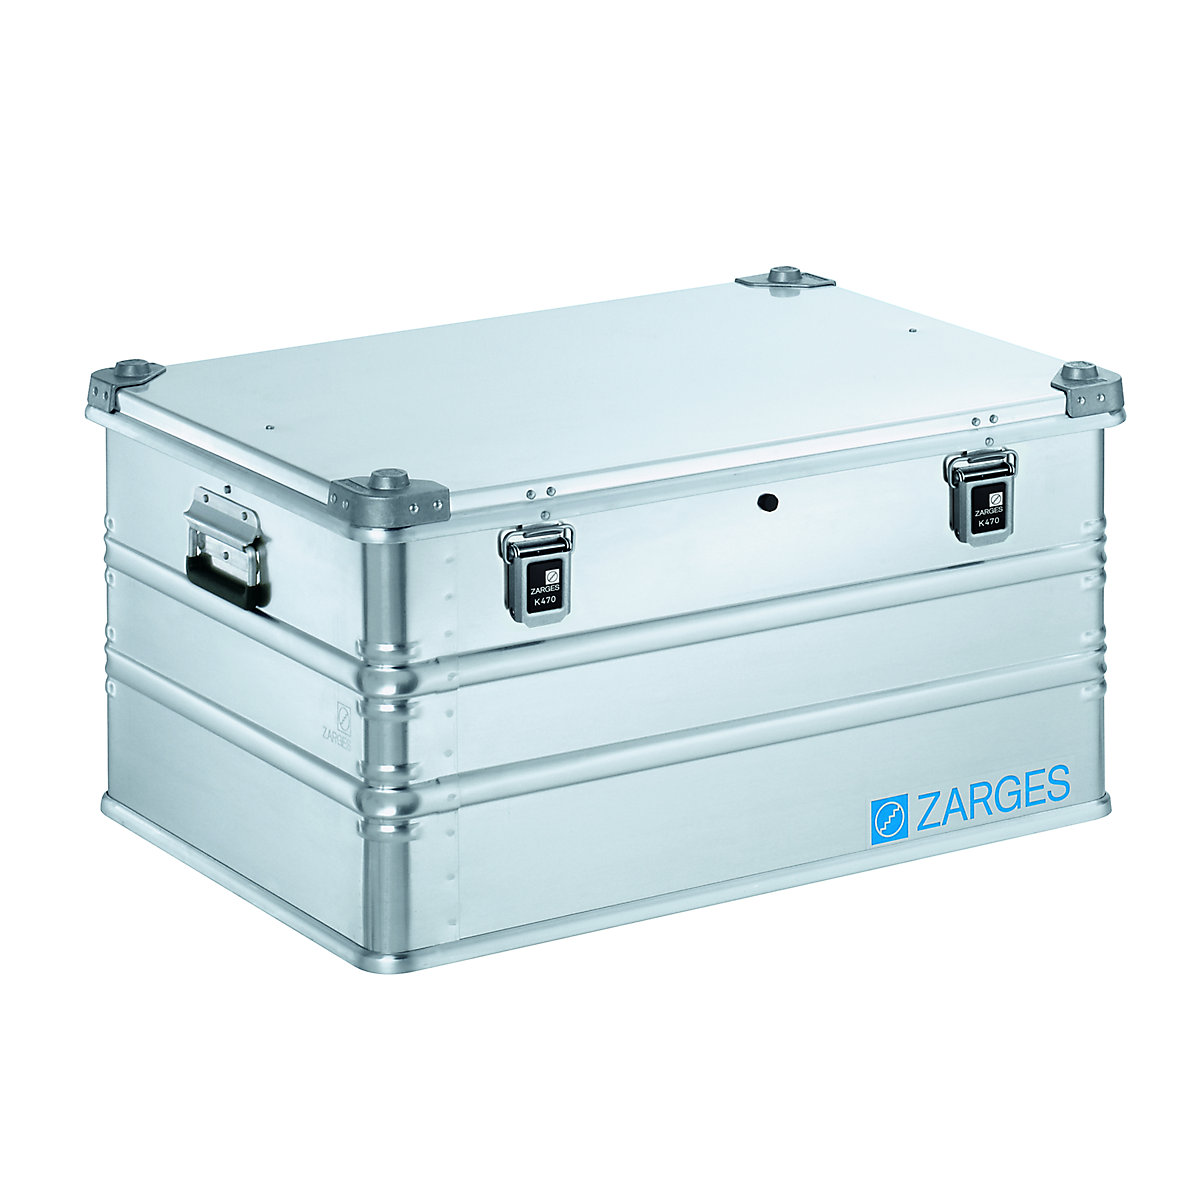 IP65 aluminium universal container - ZARGES